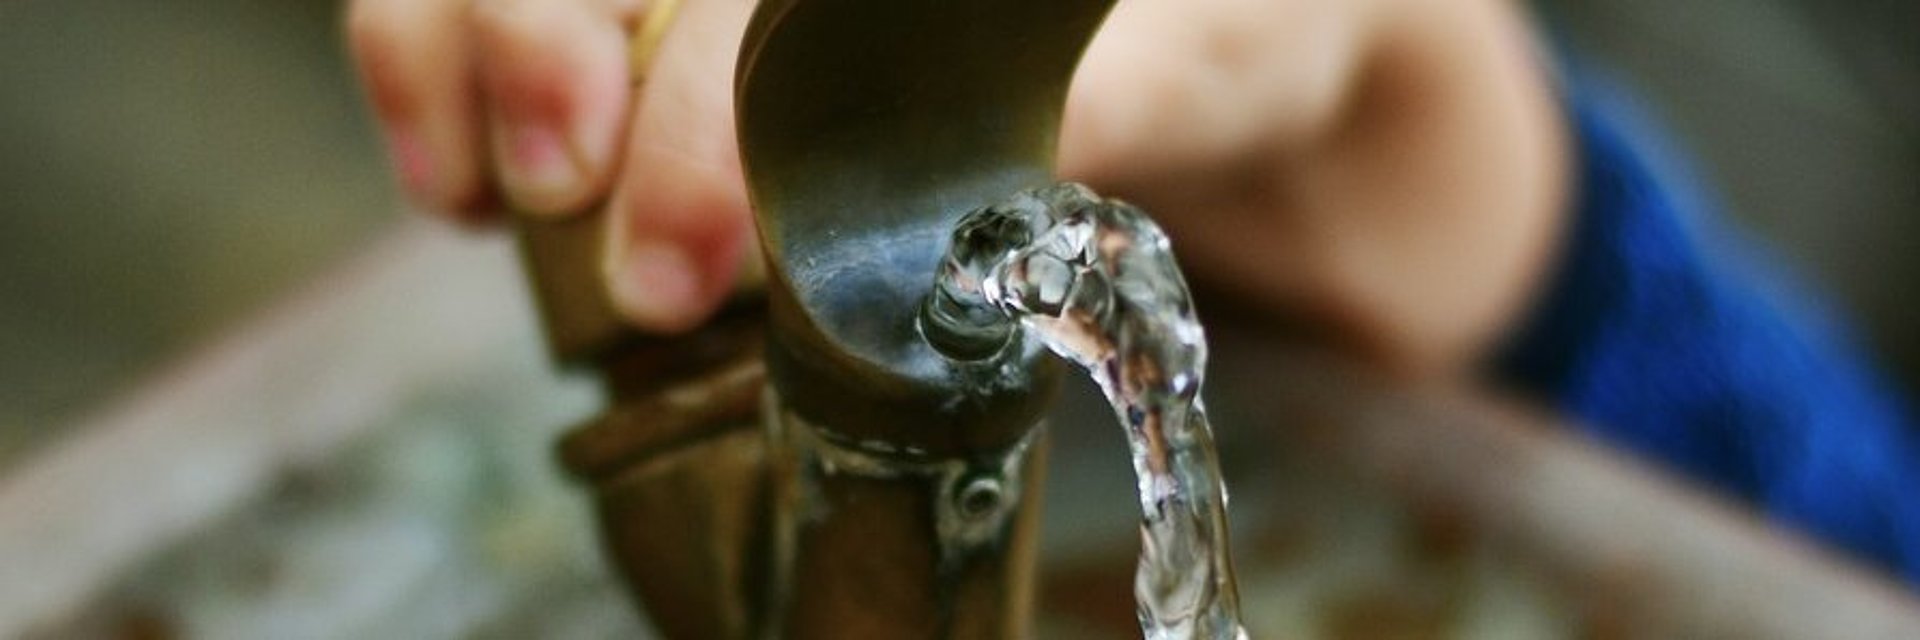 Eine Kinderhand bedient einen Trinkbrunnen aus dem frisches Wasser fließt.